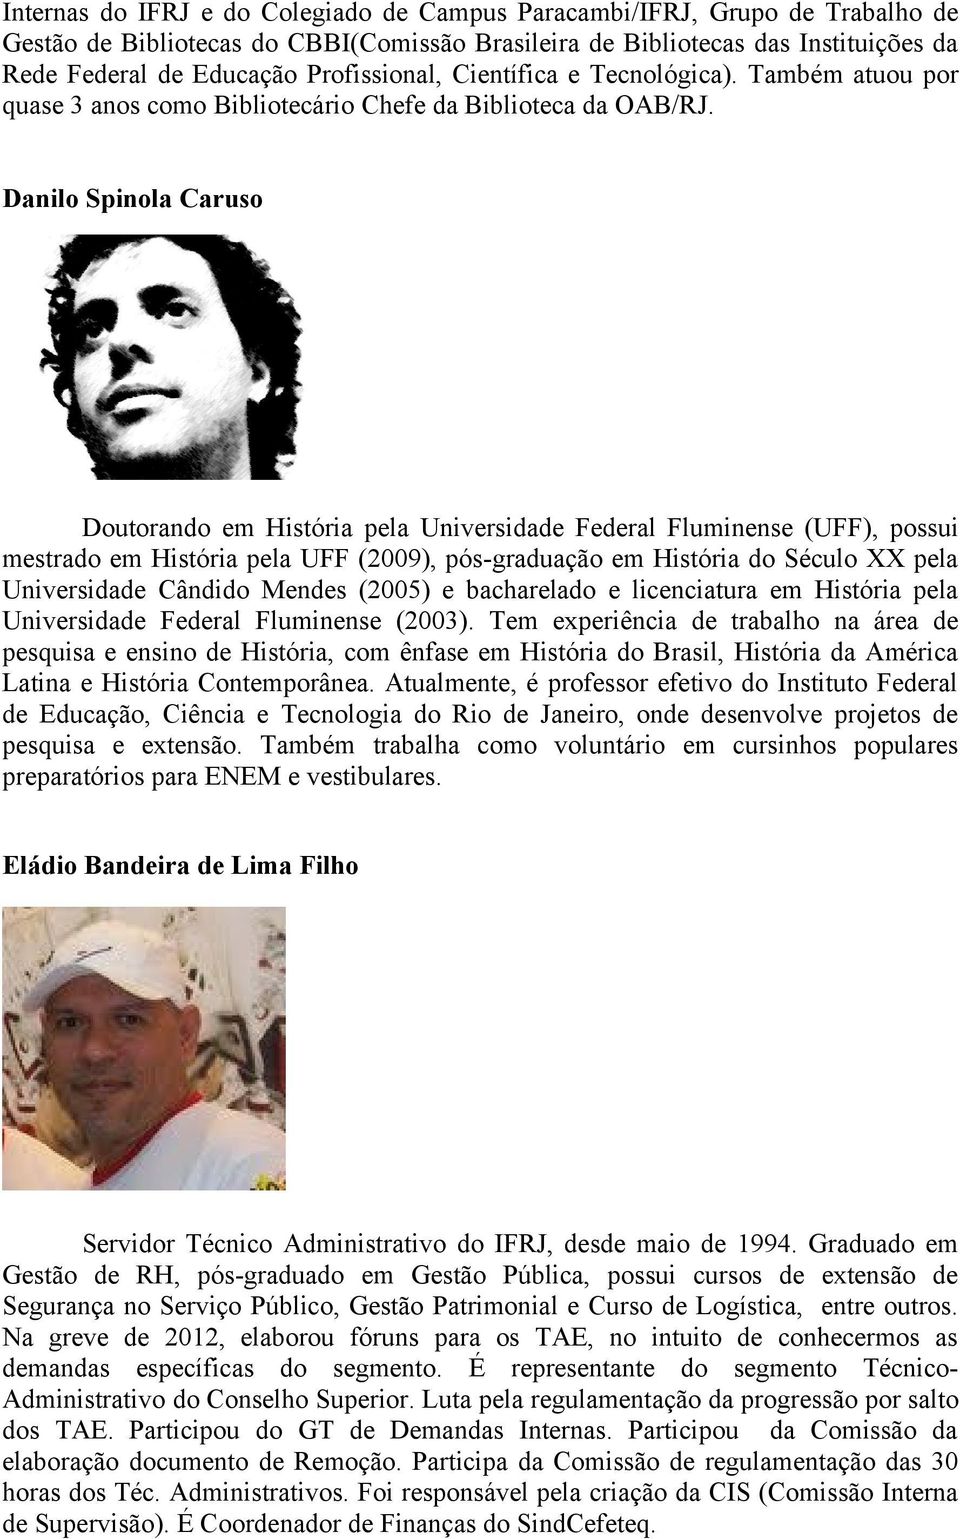 Danilo Spinola Caruso Doutorando em História pela Universidade Federal Fluminense (UFF), possui mestrado em História pela UFF (2009), pós-graduação em História do Século XX pela Universidade Cândido